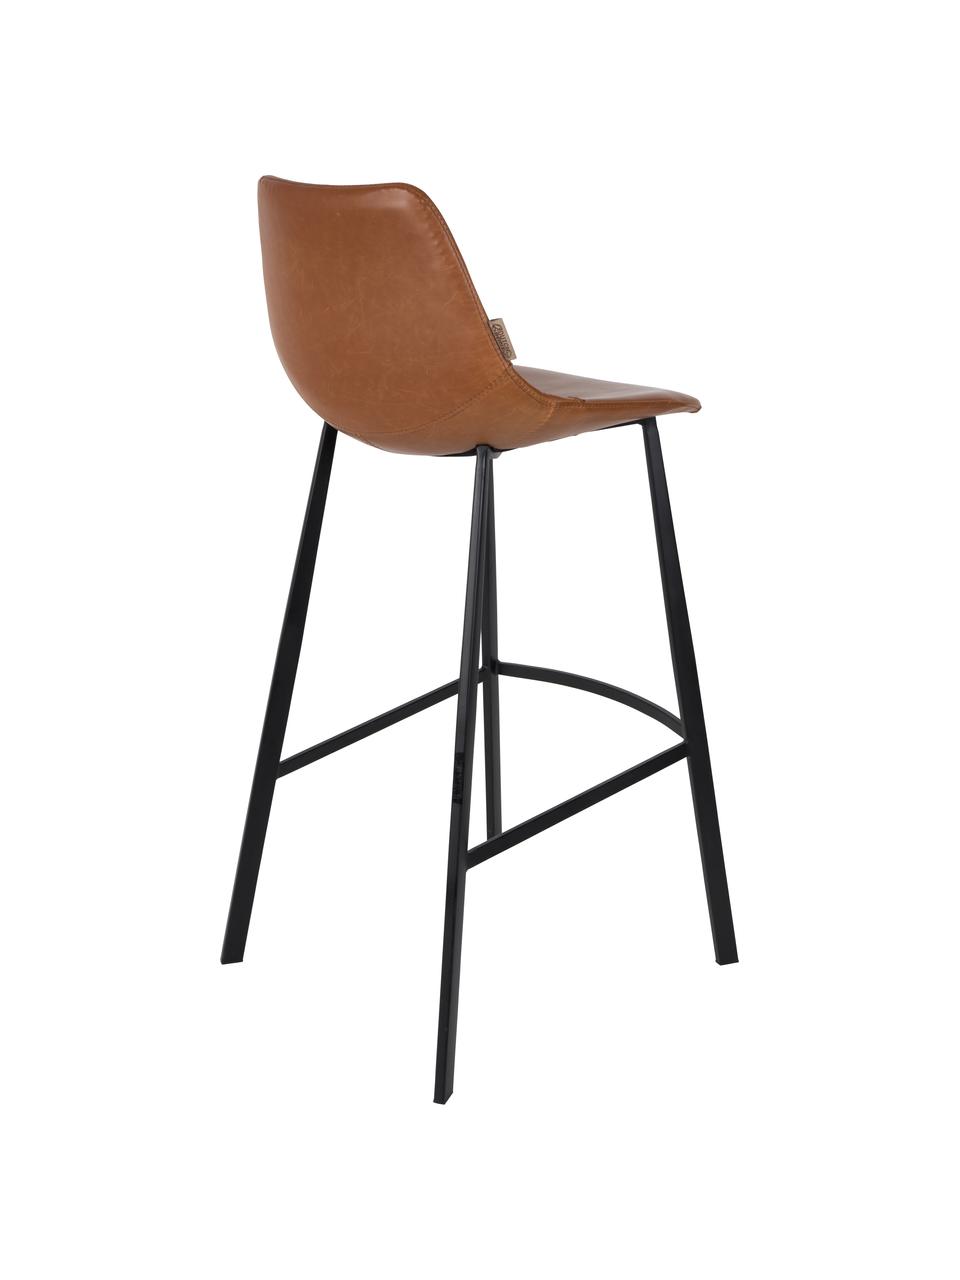 Barová židle z umělé kůže Franky, Nohy: černá Potah: hnědá, Š 50 cm, V 106 cm